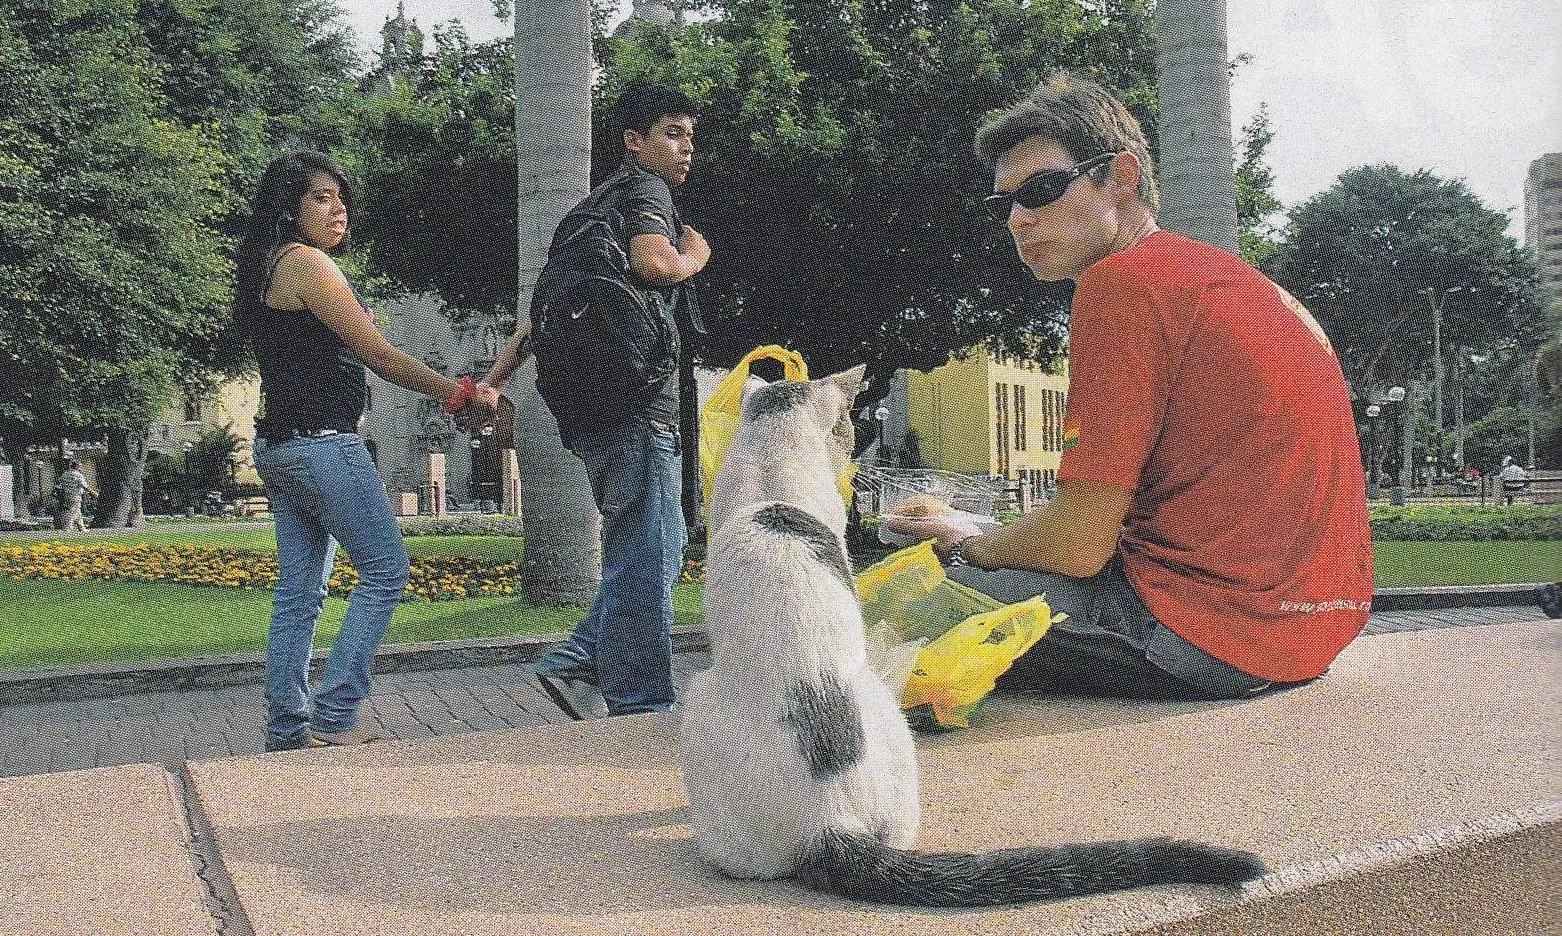 foto de um gato que habita o parque, sentado ao lado de um visitante